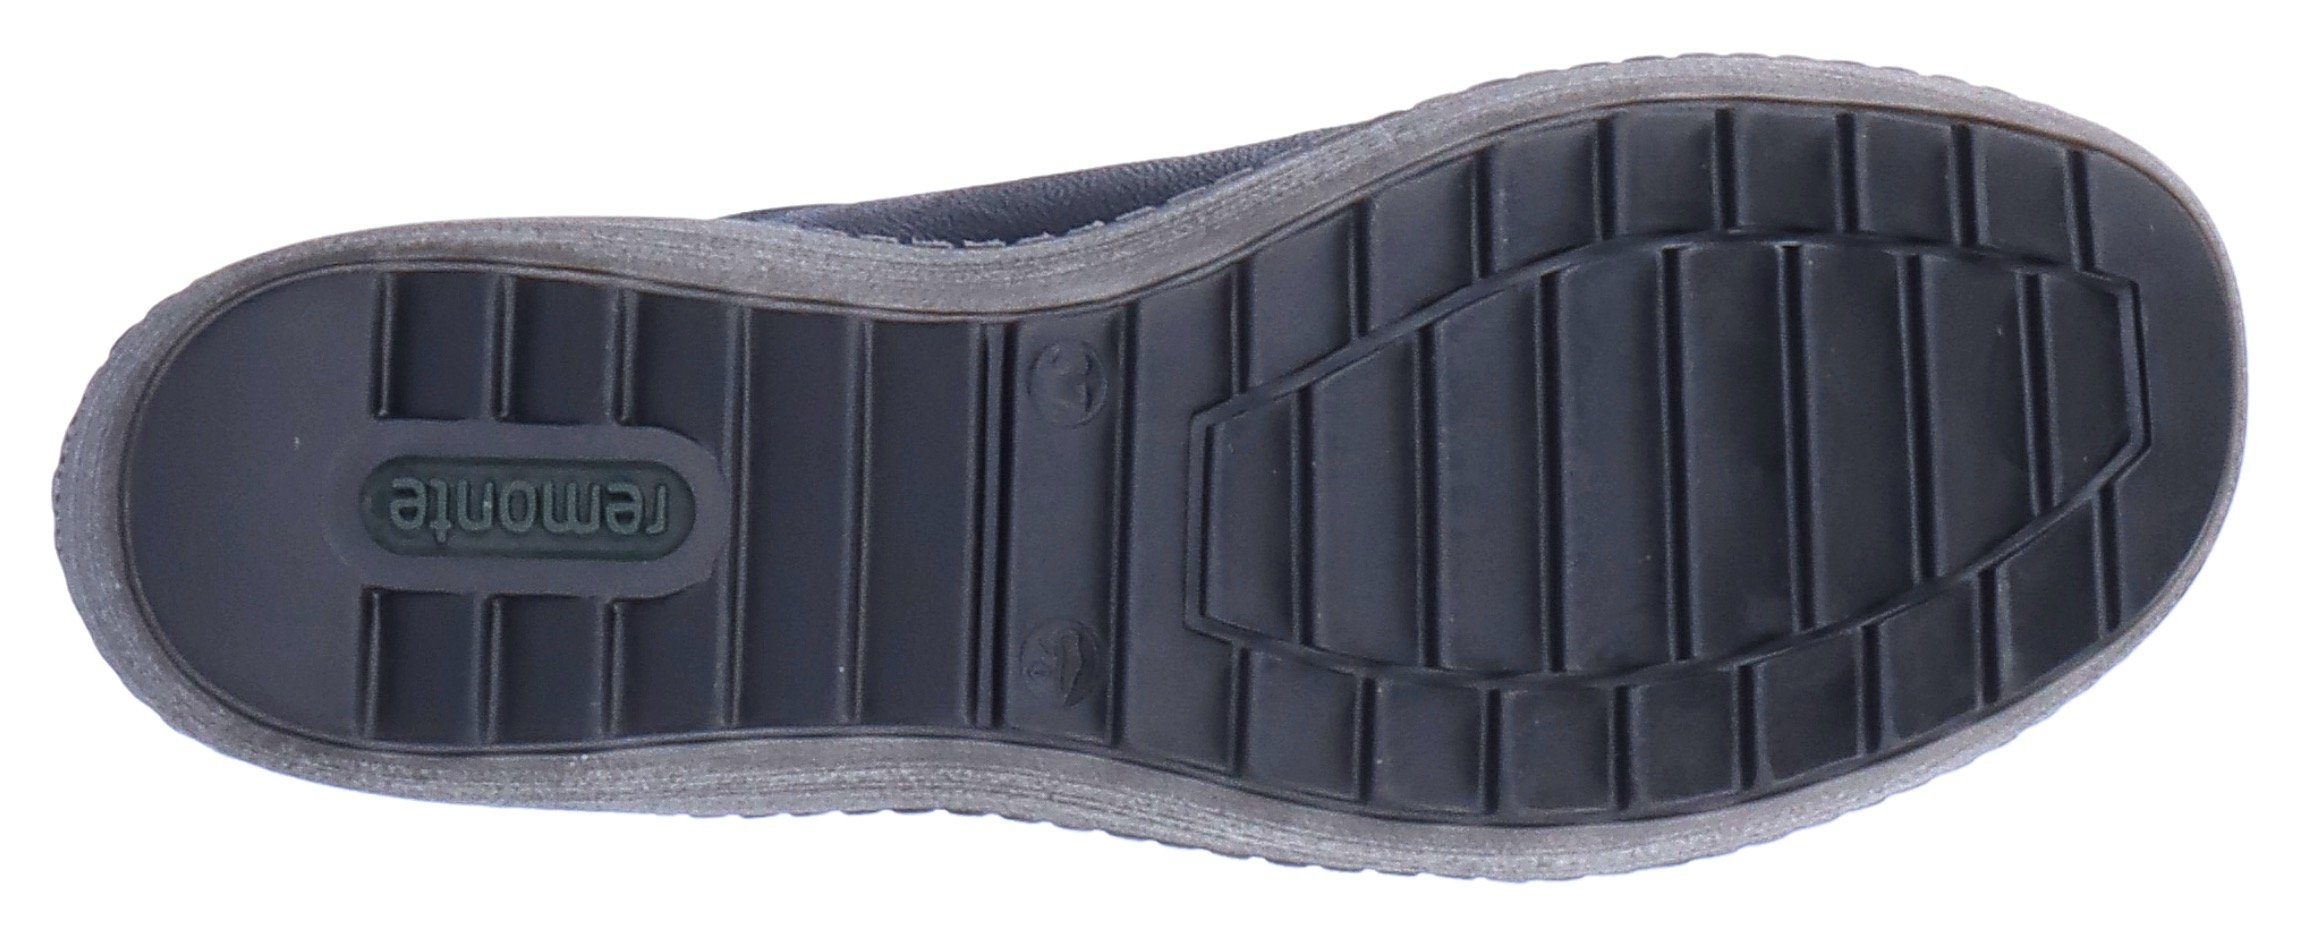 Remonte schwarz-silberfarben mit Schnürschuh Tex-Ausstattung